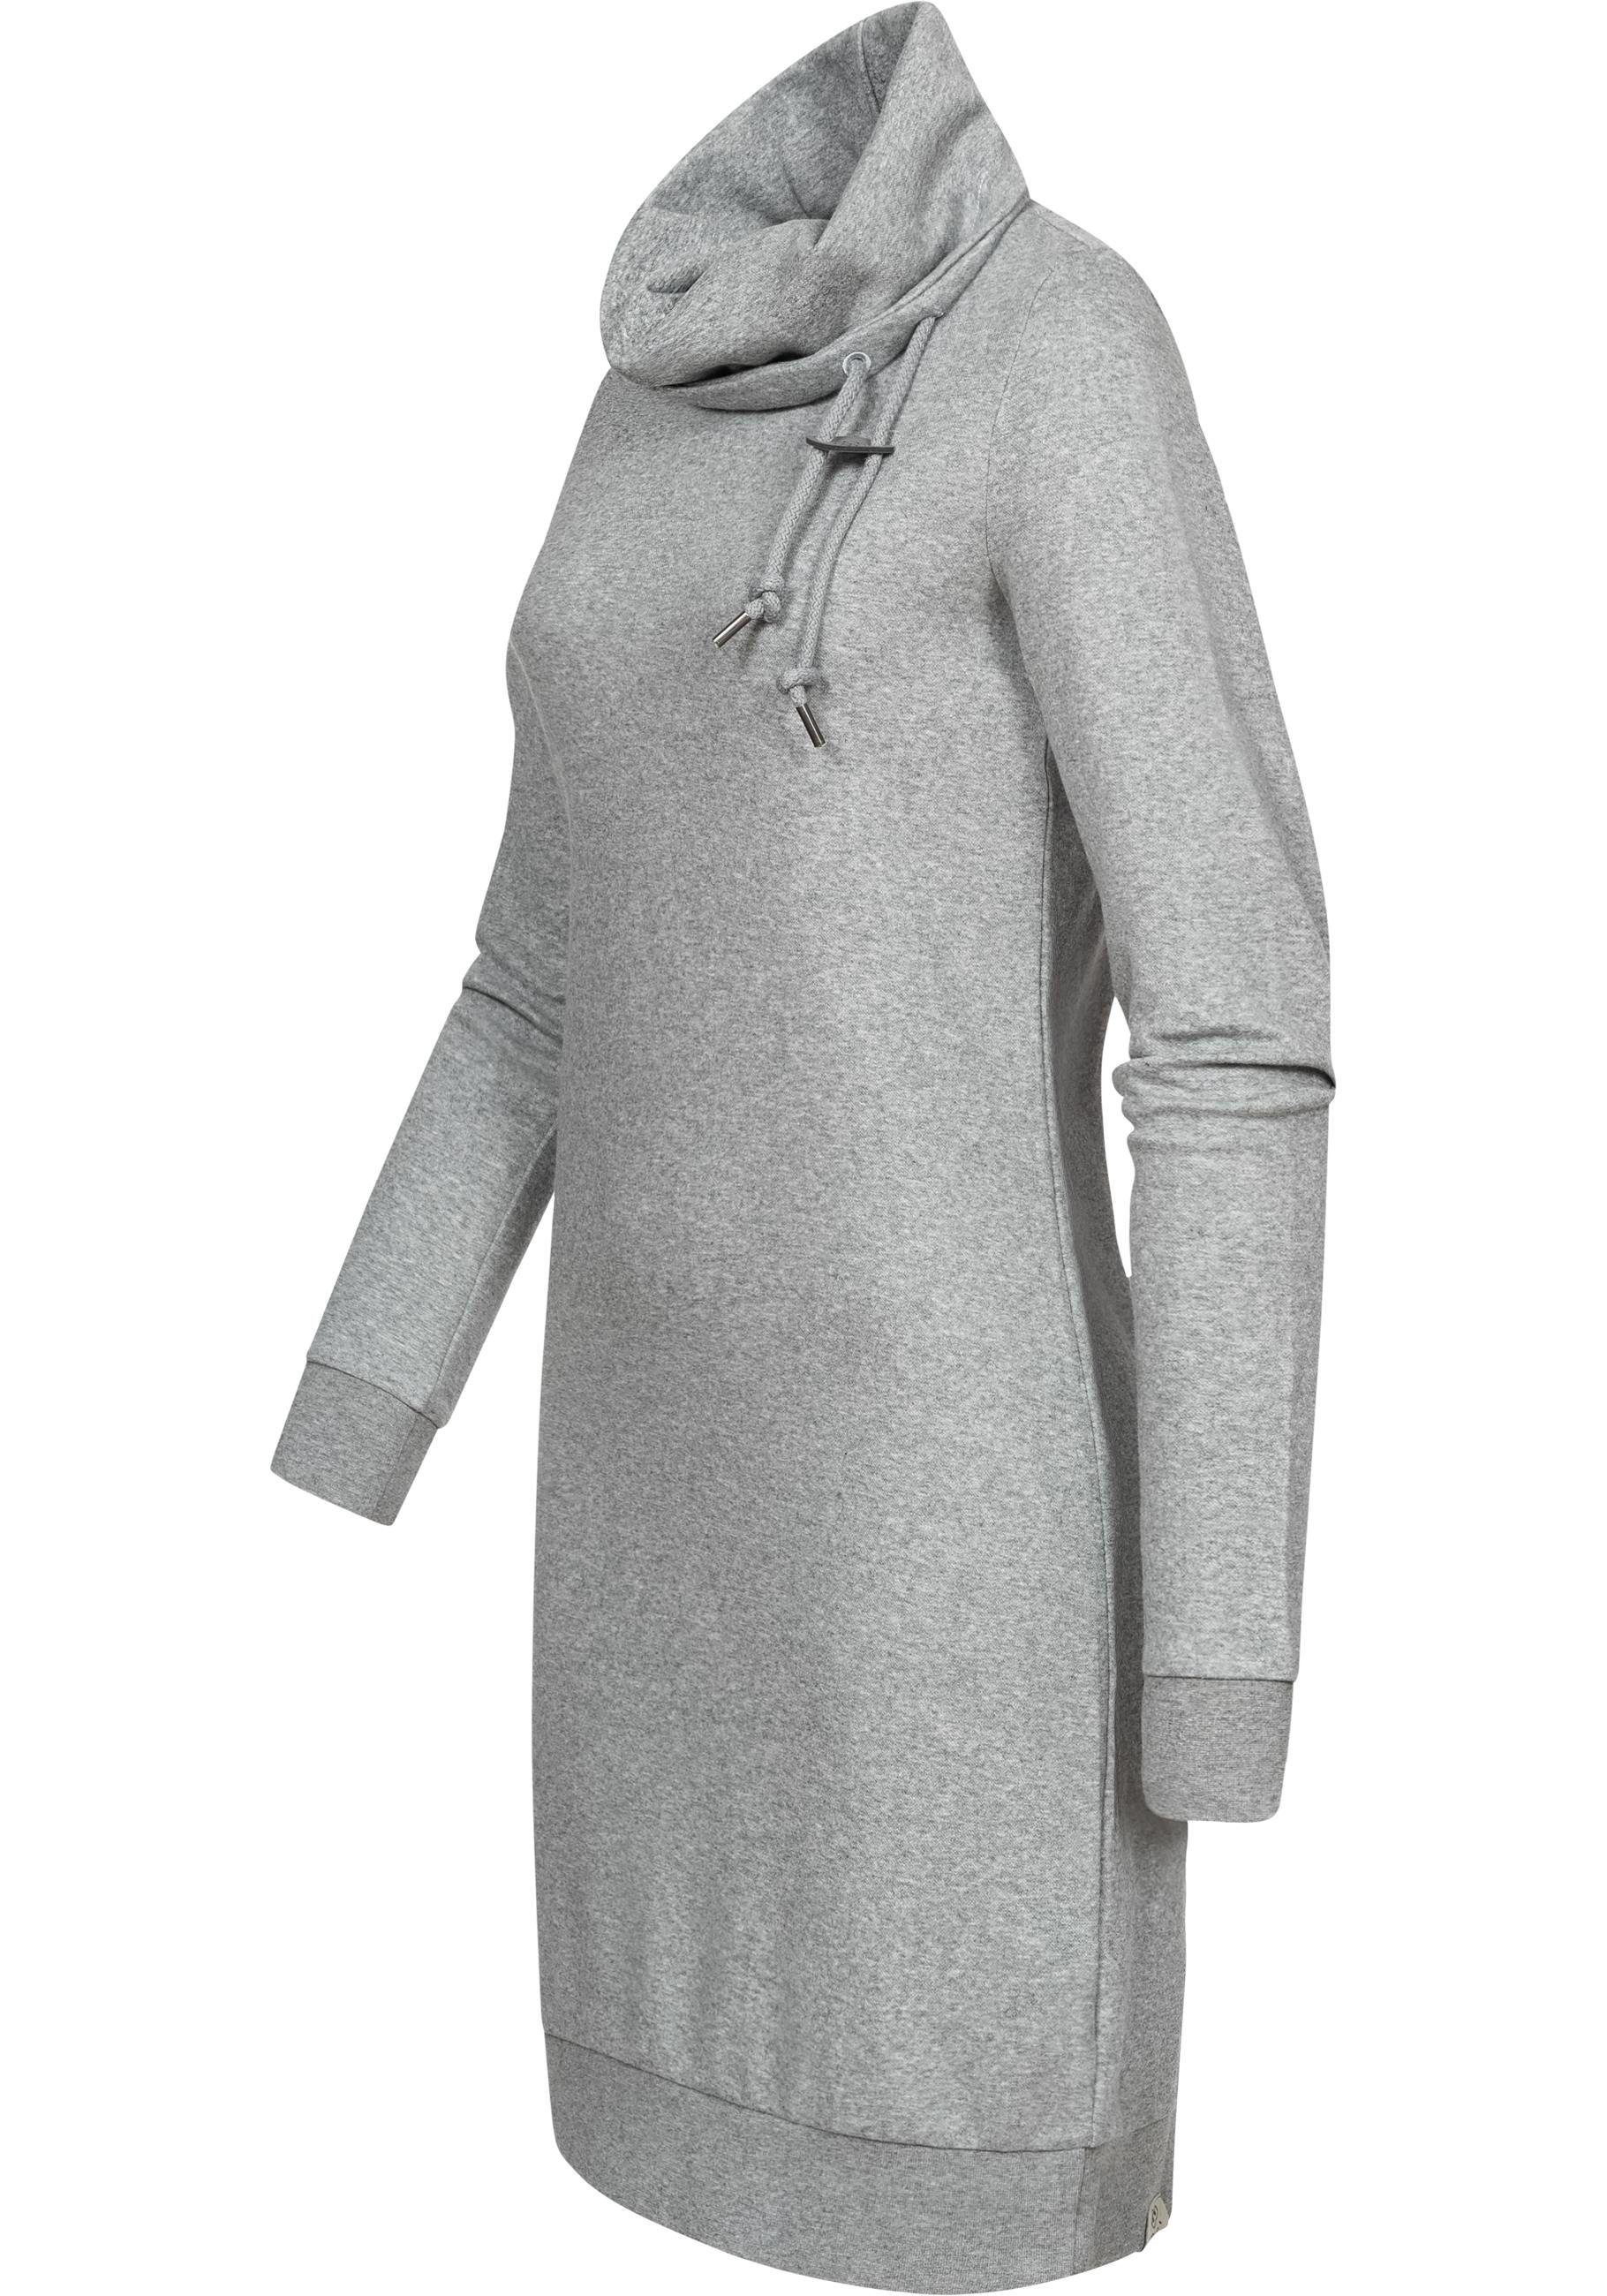 Ragwear Sweatkleid Chloe Solid stylisches Langarmkleid mit Ethnomuster,  Hochwertige Qualität u. Verarbeitung, 100% vegan hergestellt